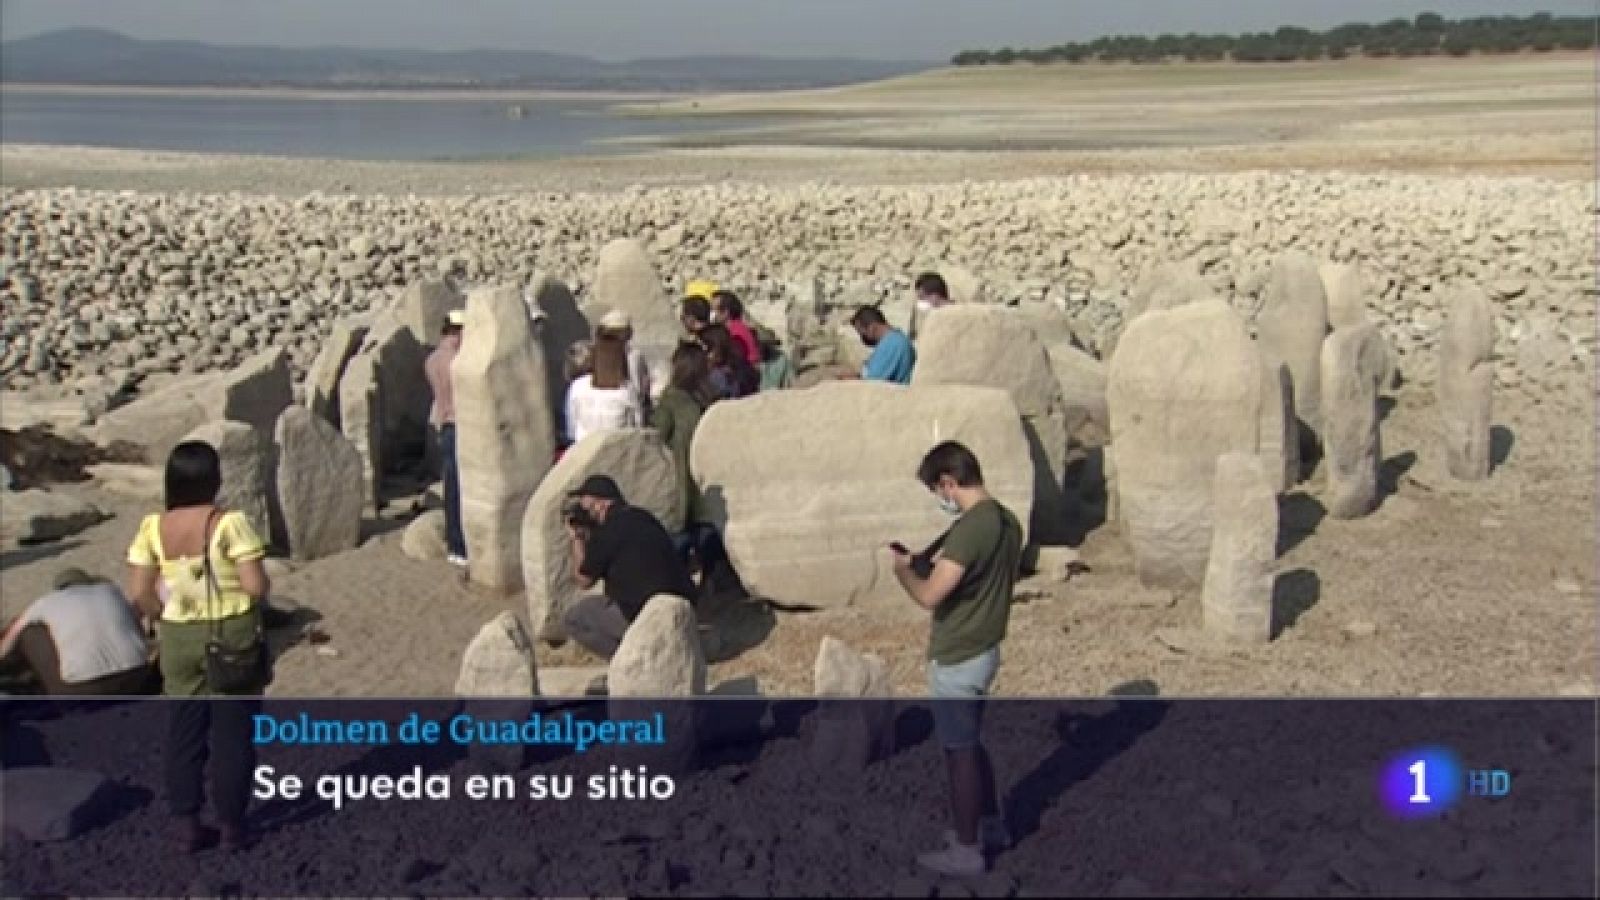 El dolmen de Guadalperal se quedará en su ubicación original